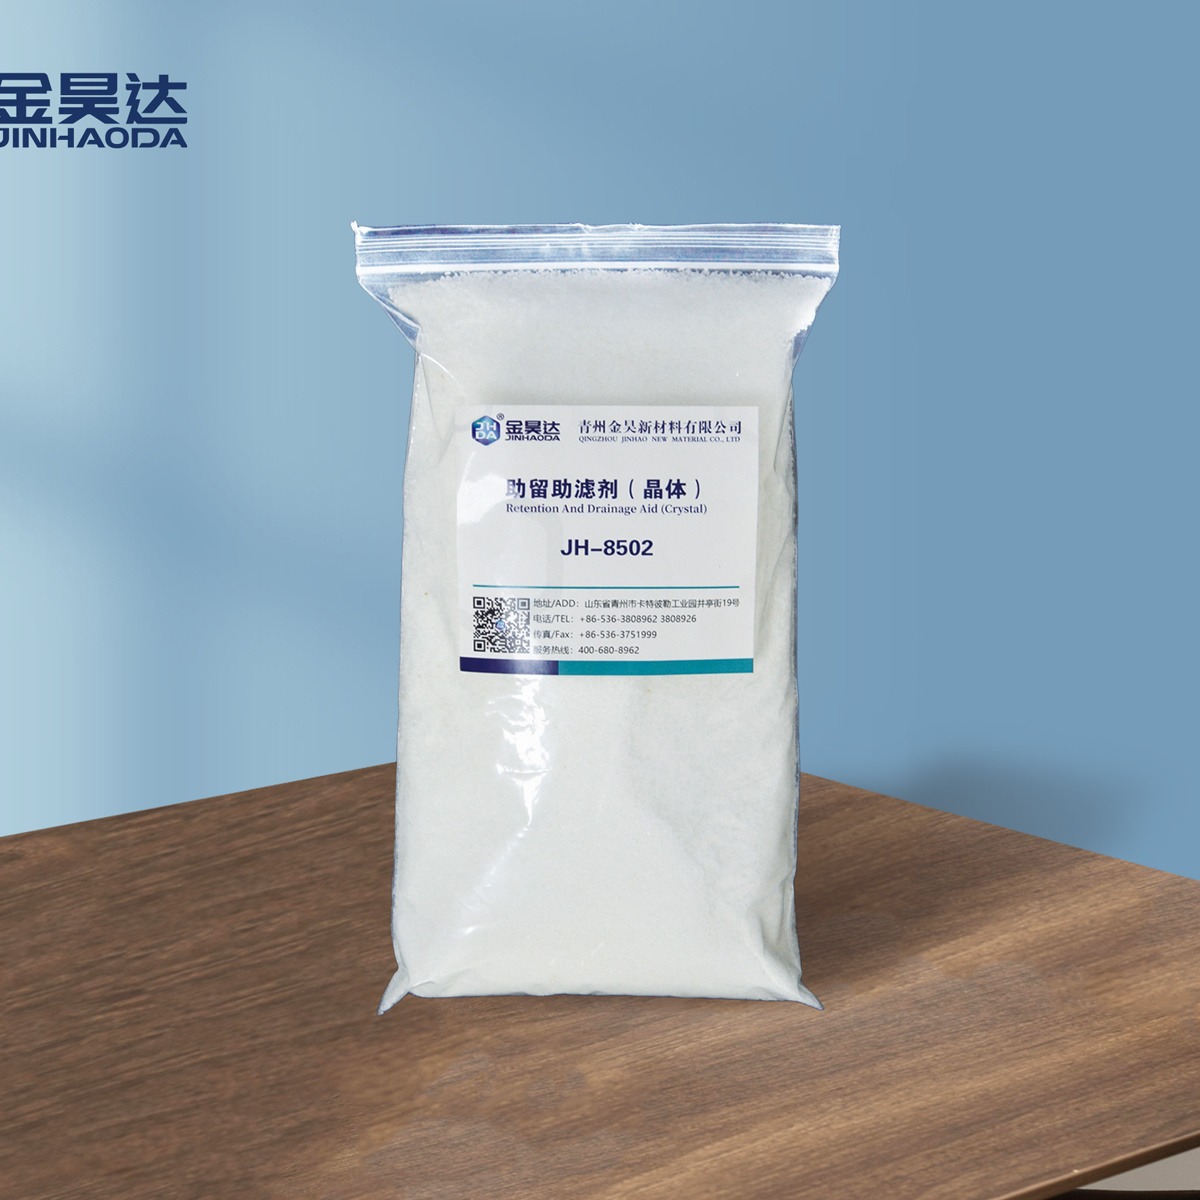 山东金昊 JH-8502造纸助留助滤剂 改善成纸匀度和纸张物理性质 降低综合生产成本